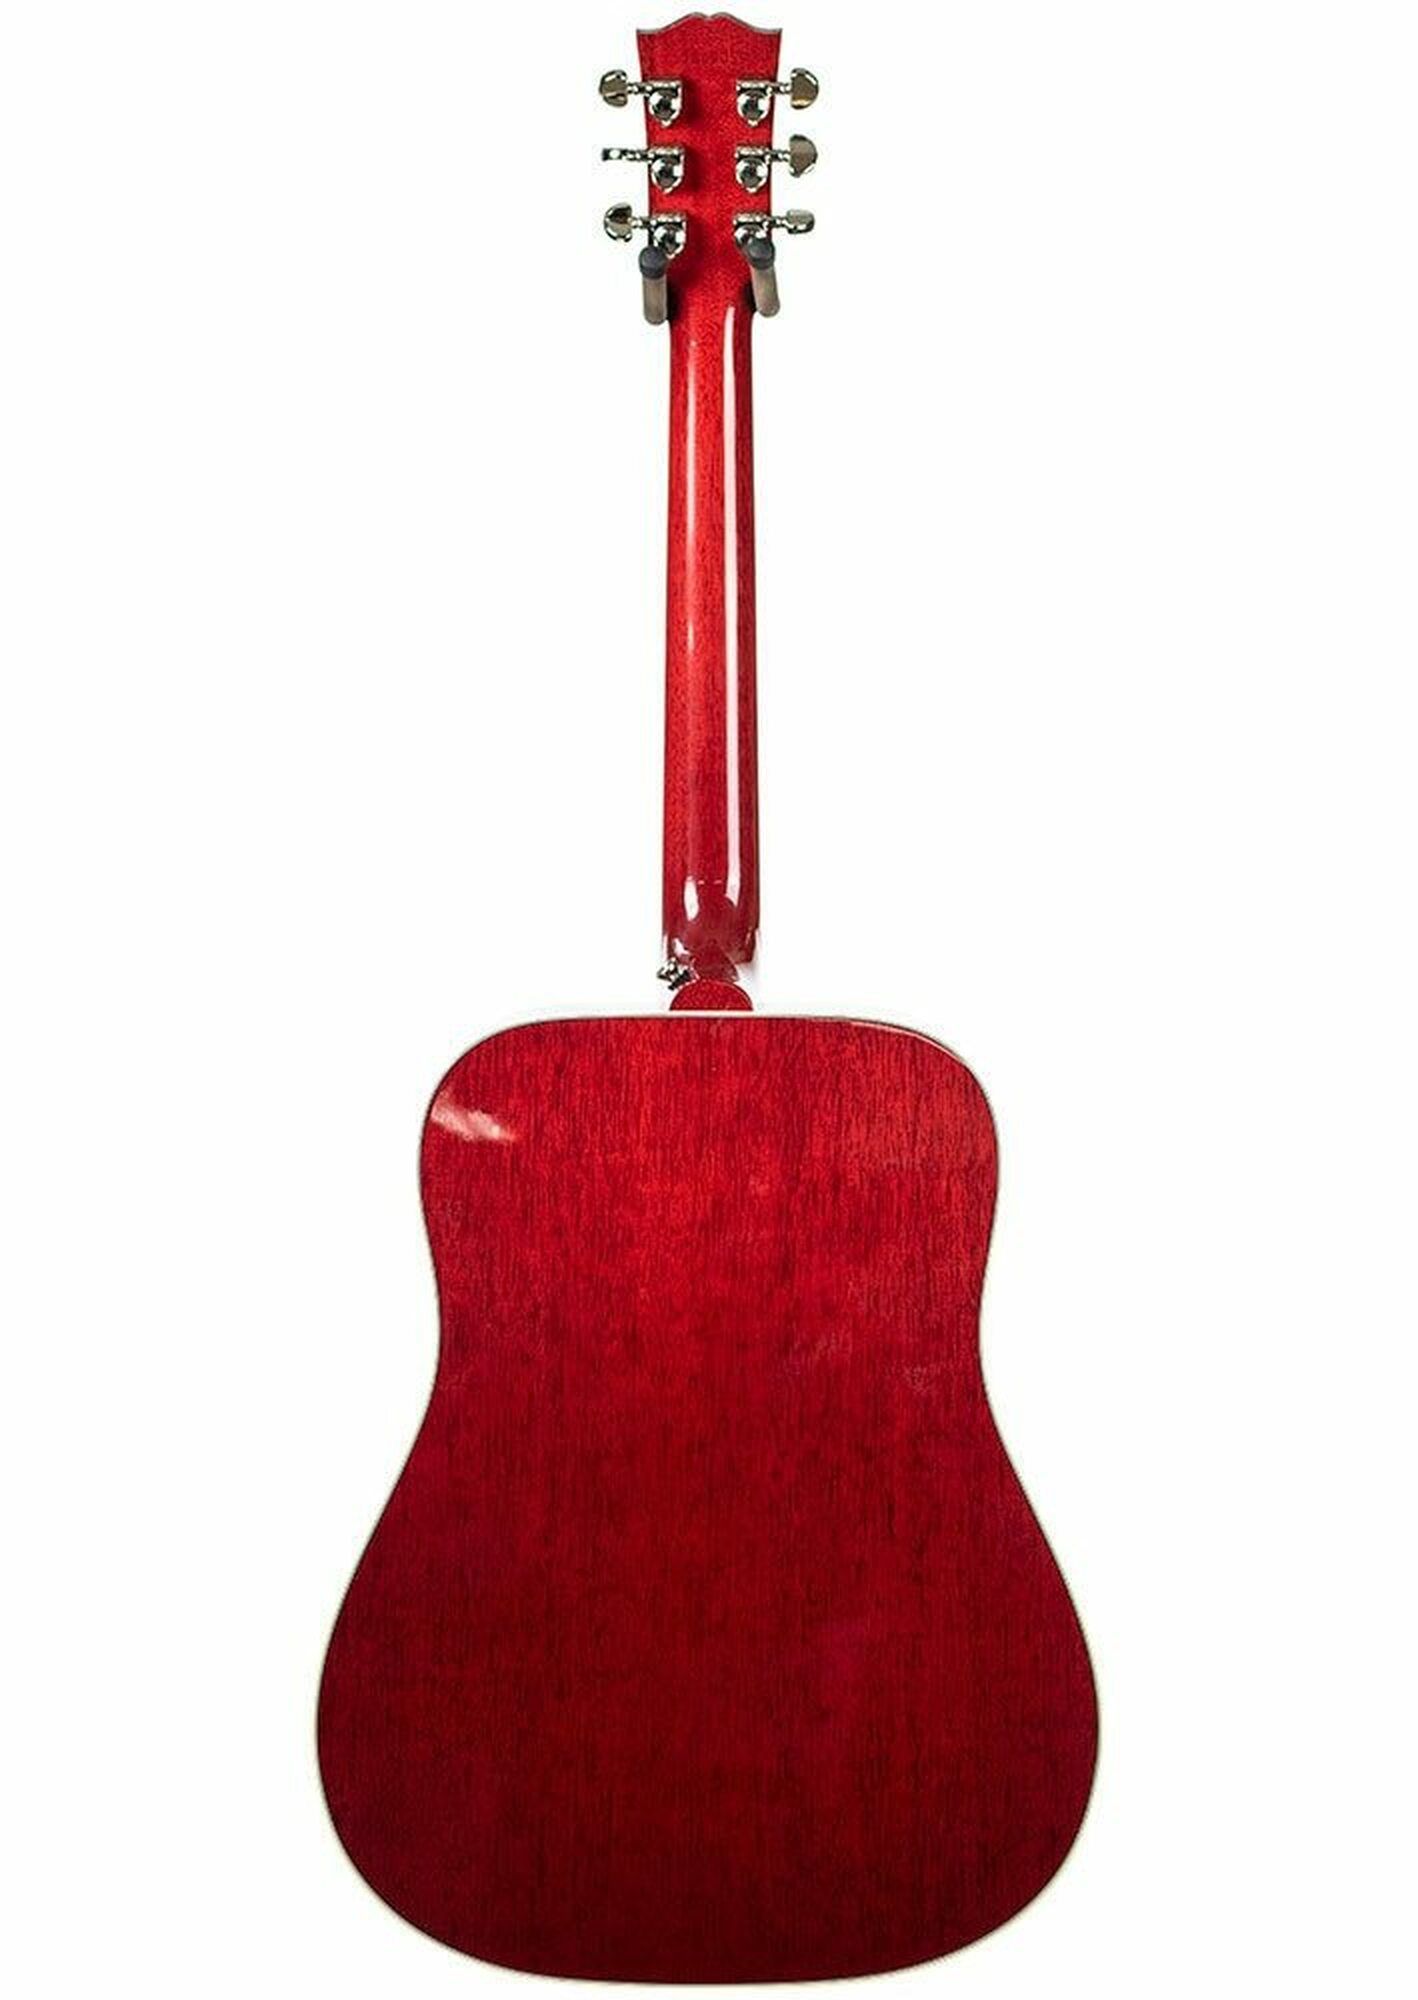 Gibson Montana Hummingbird Vintage Cherry Sunburst